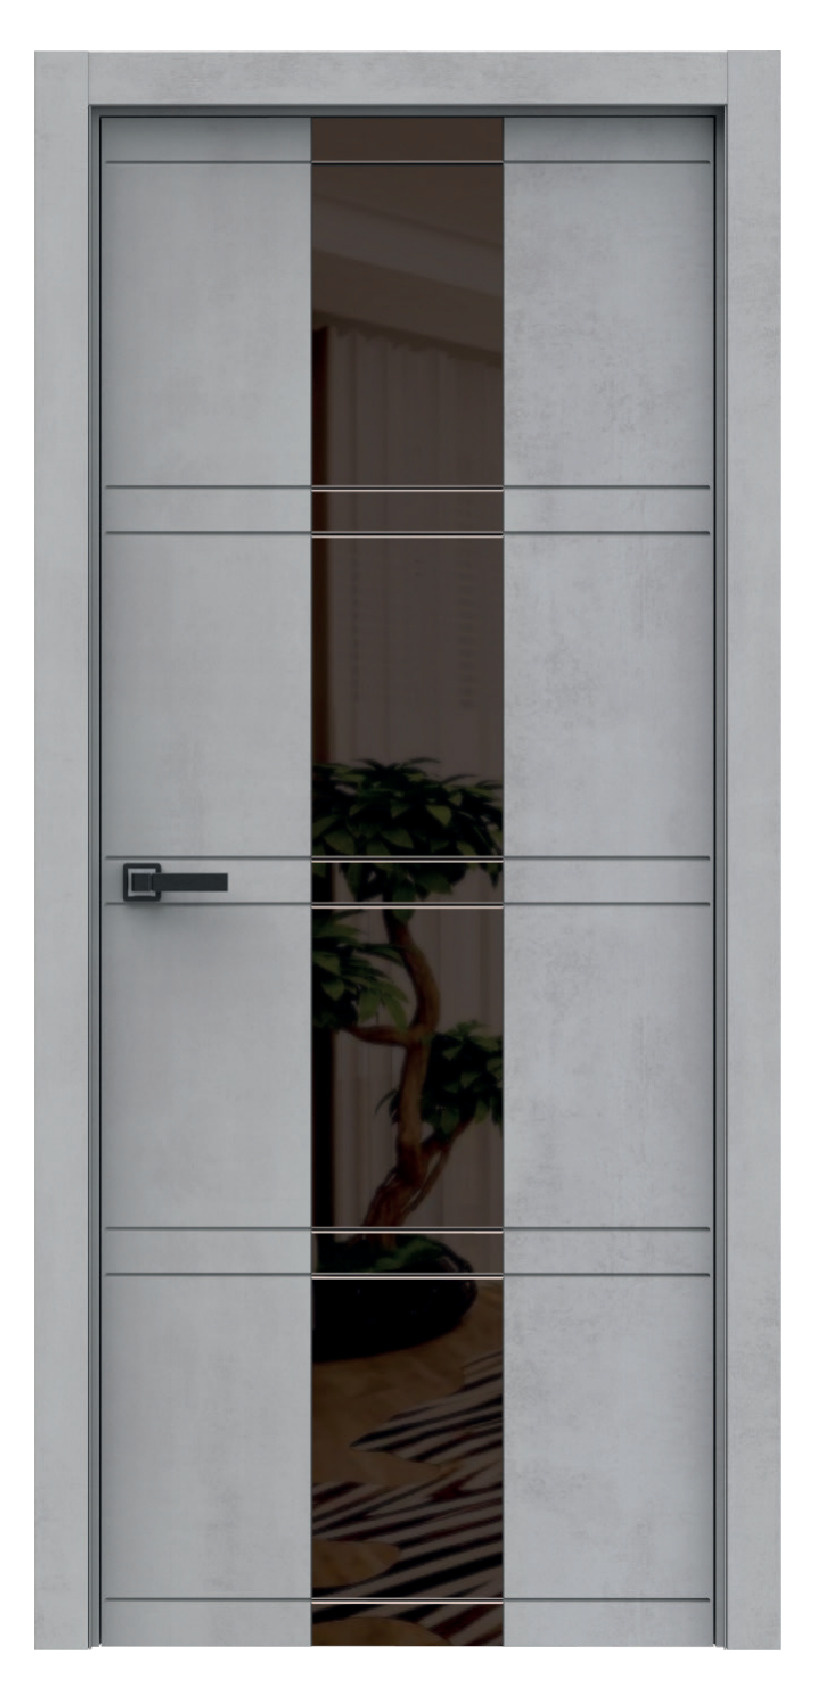 Questdoors Межкомнатная дверь QMS12, арт. 17901 - фото №1